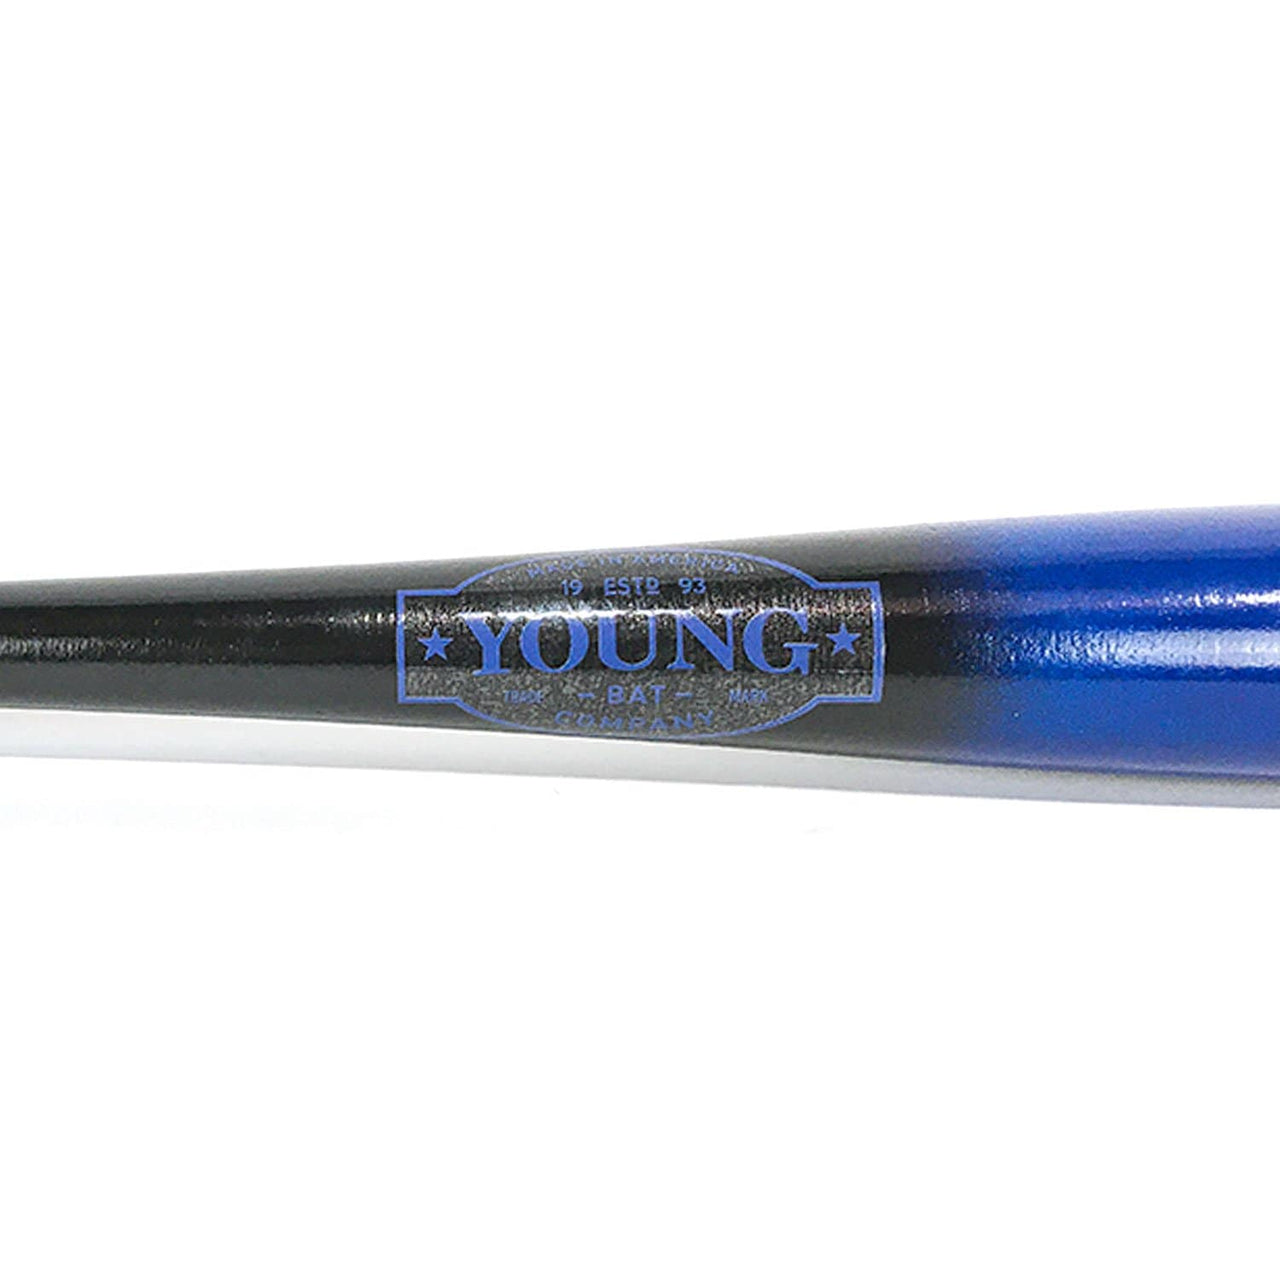 Young Bat Co. Youth 29 Wood Baseball Bat